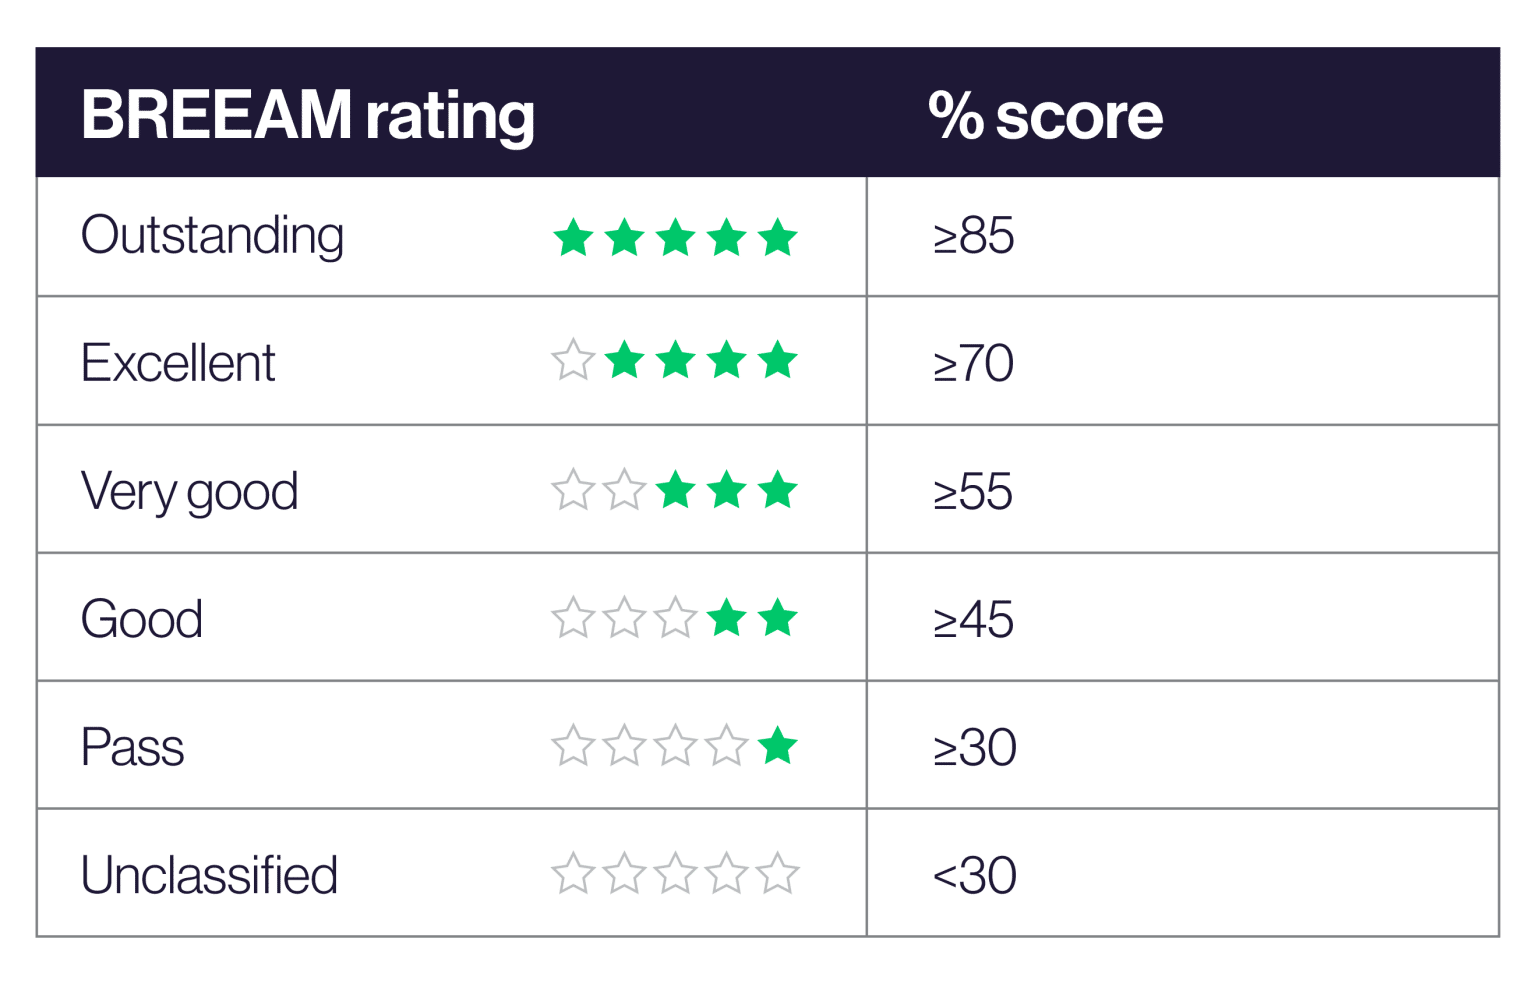 BREEAM Rating Scores